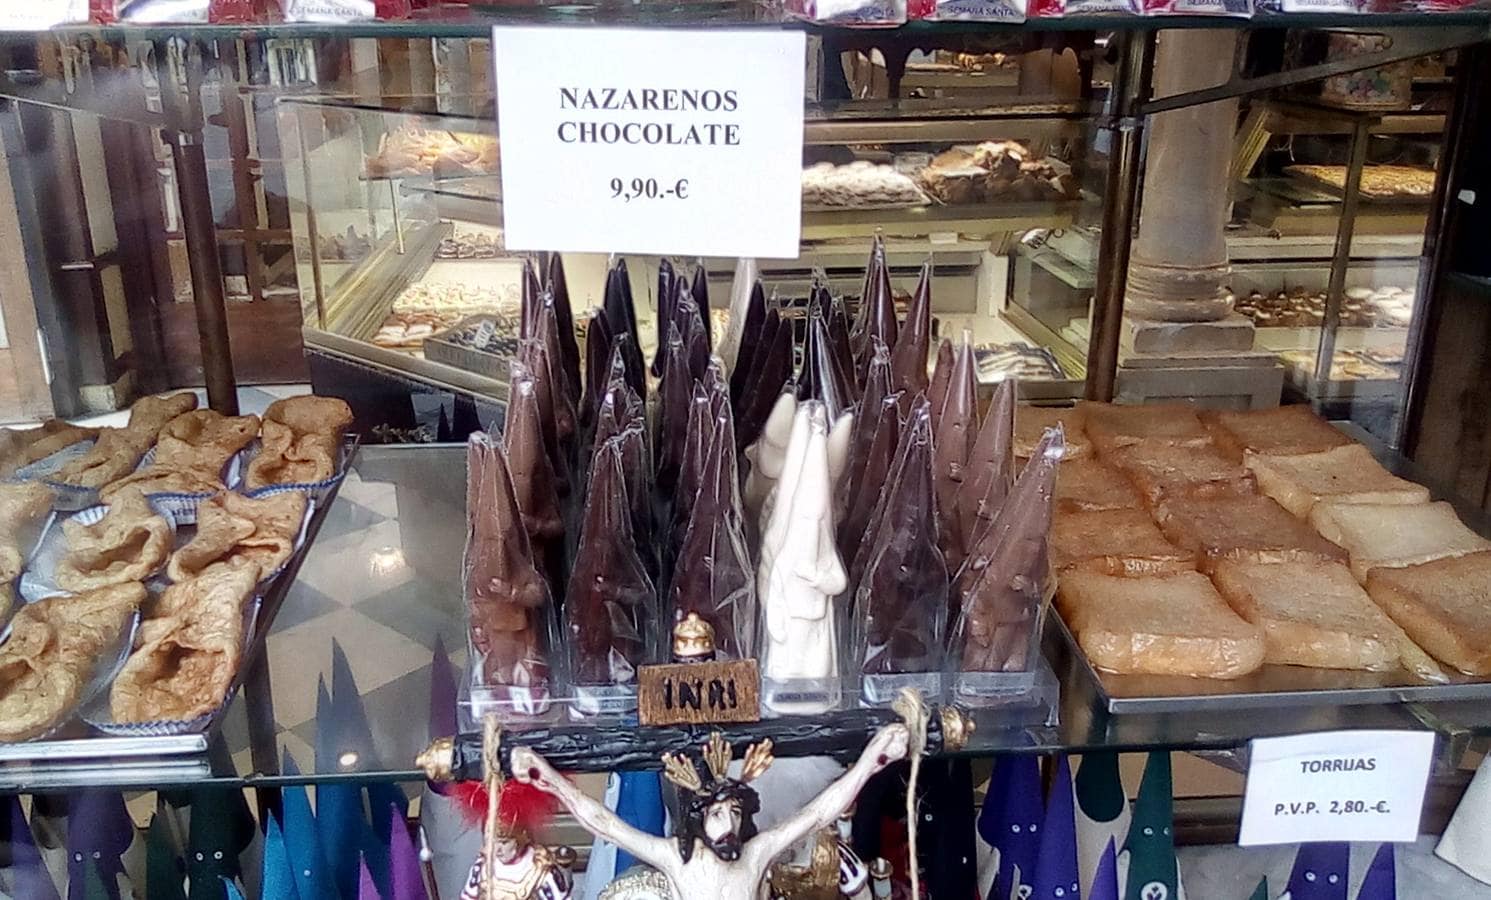 Nazarenos de chocolate, pestiños y torrijas en la pastelería de la Campana